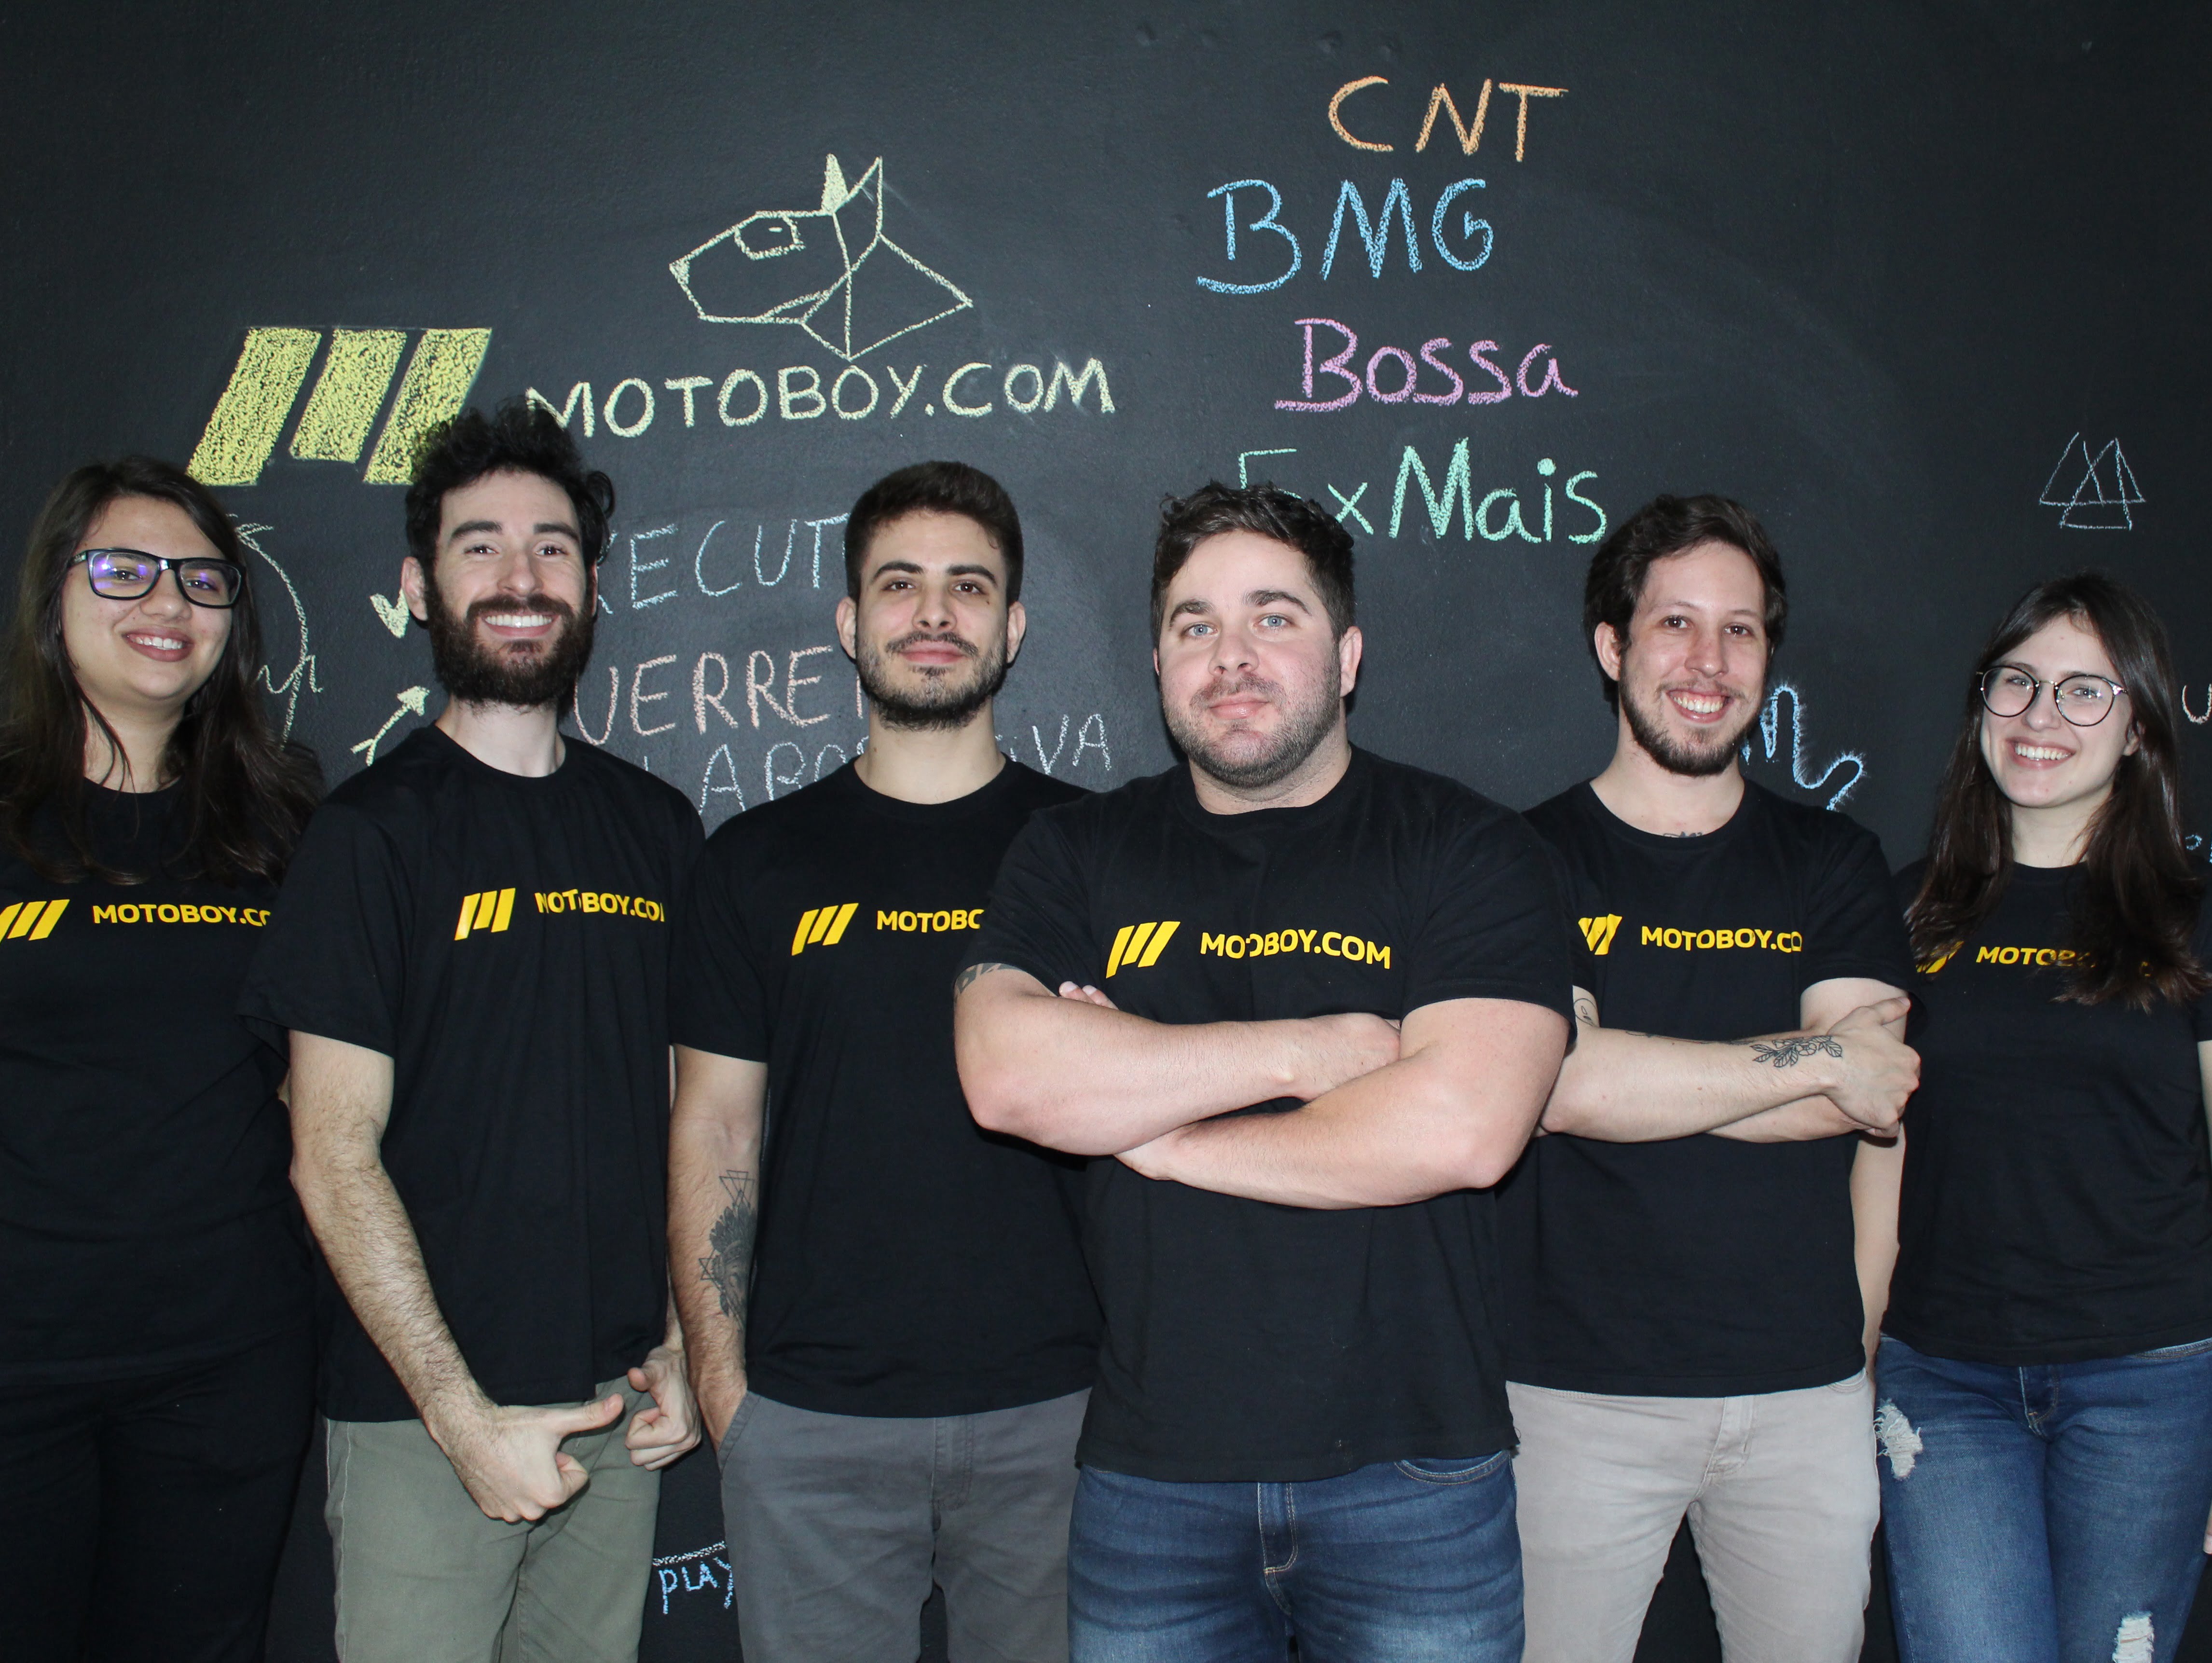 Para CEO da Motoboy.com, engenheiro de software será a profissão do futuro